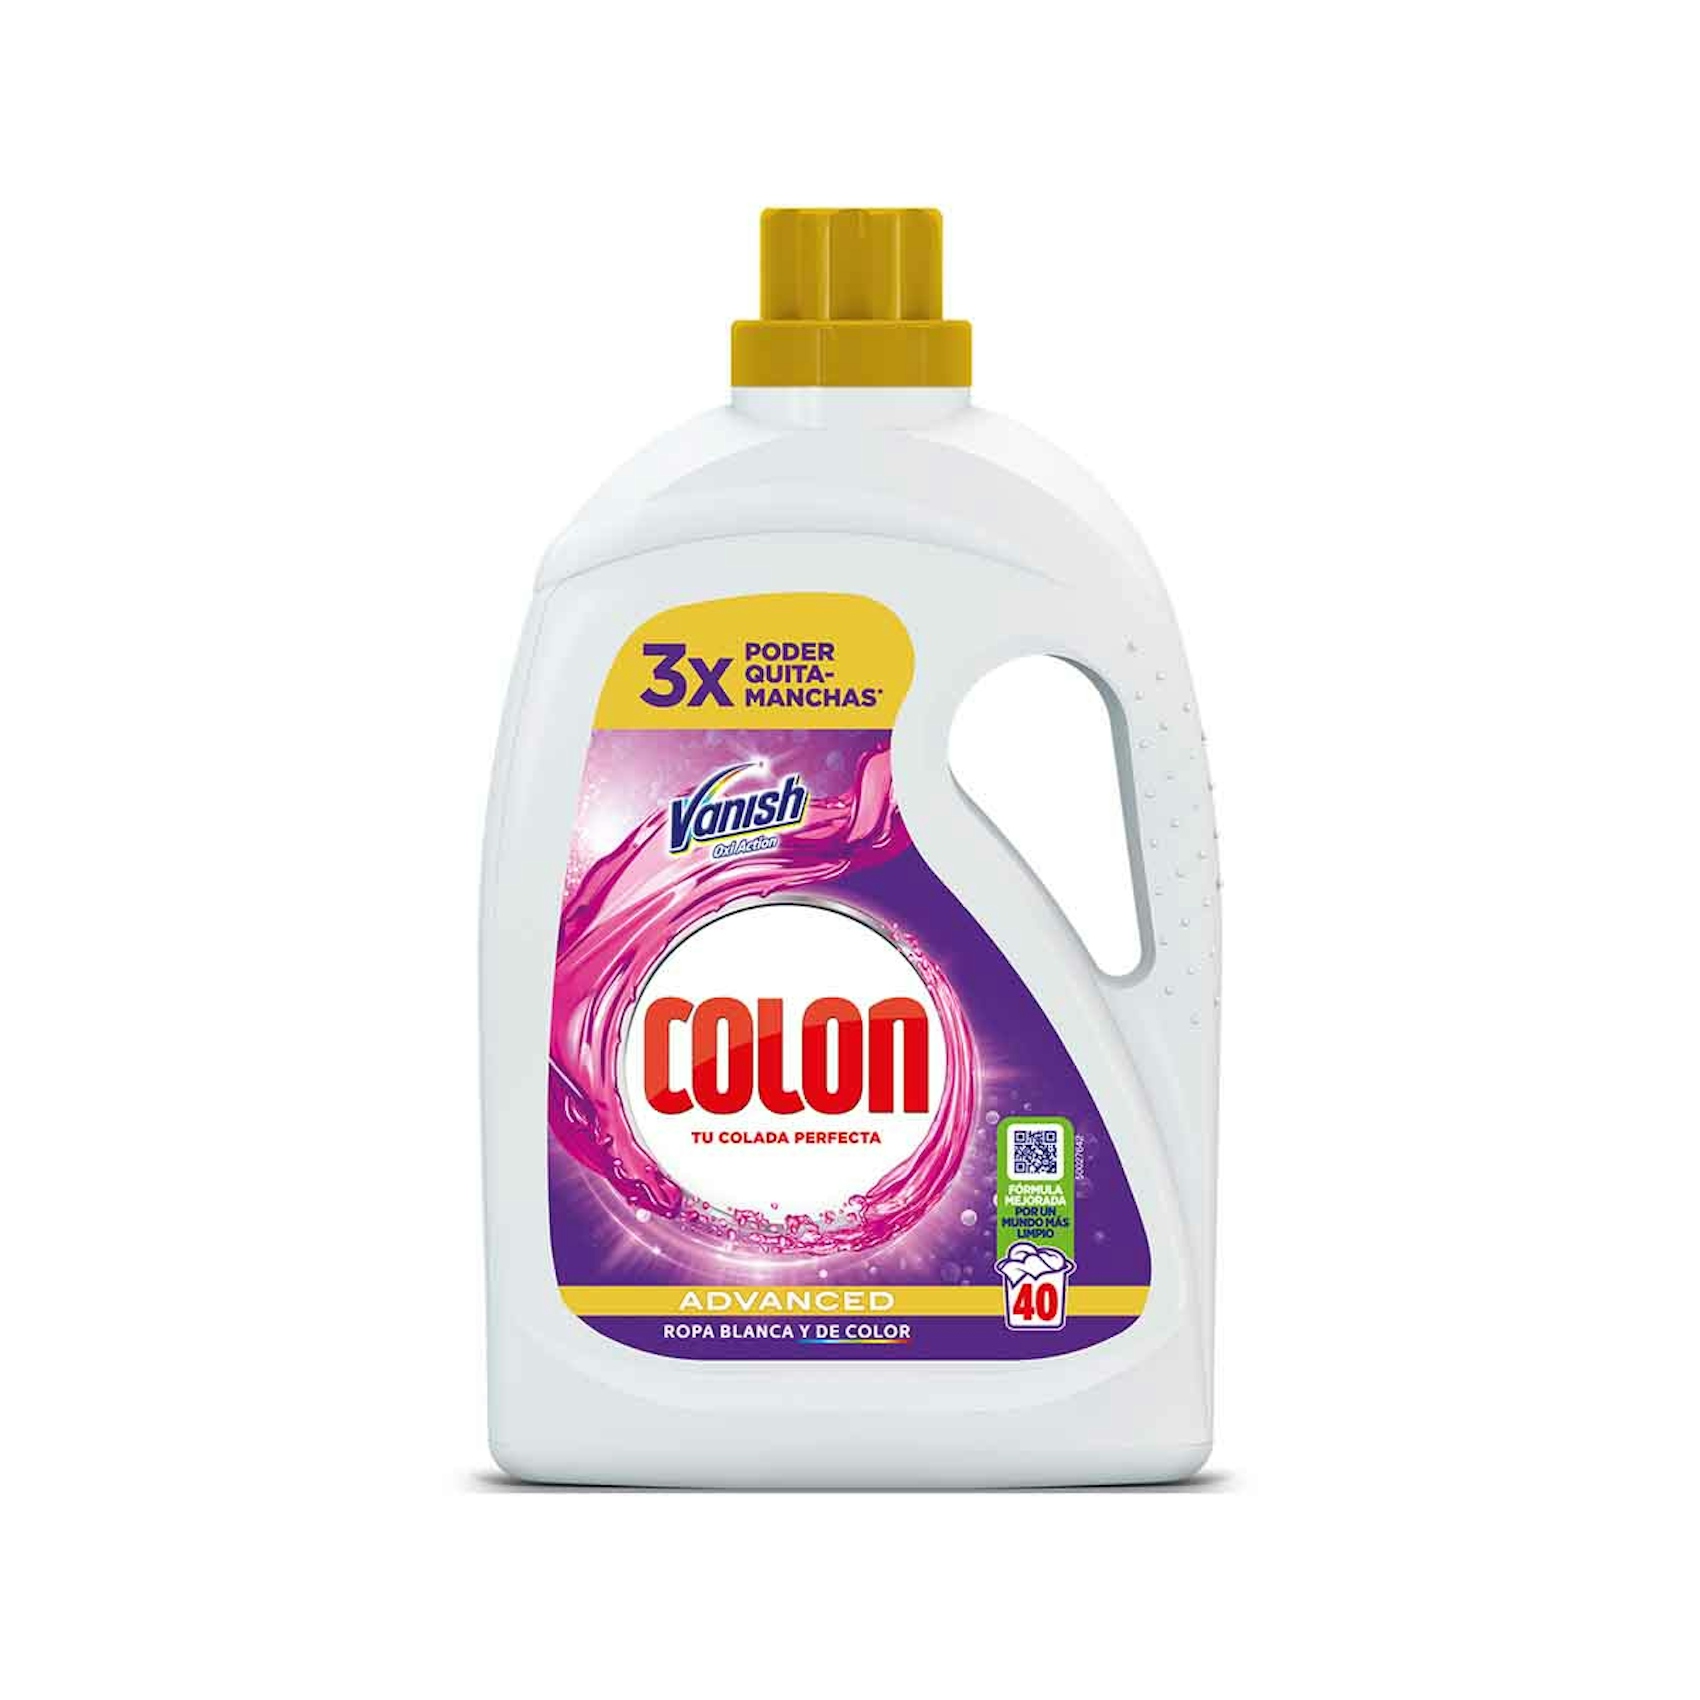 Detergente Gel Vanish Advance Colon 40 Dosis